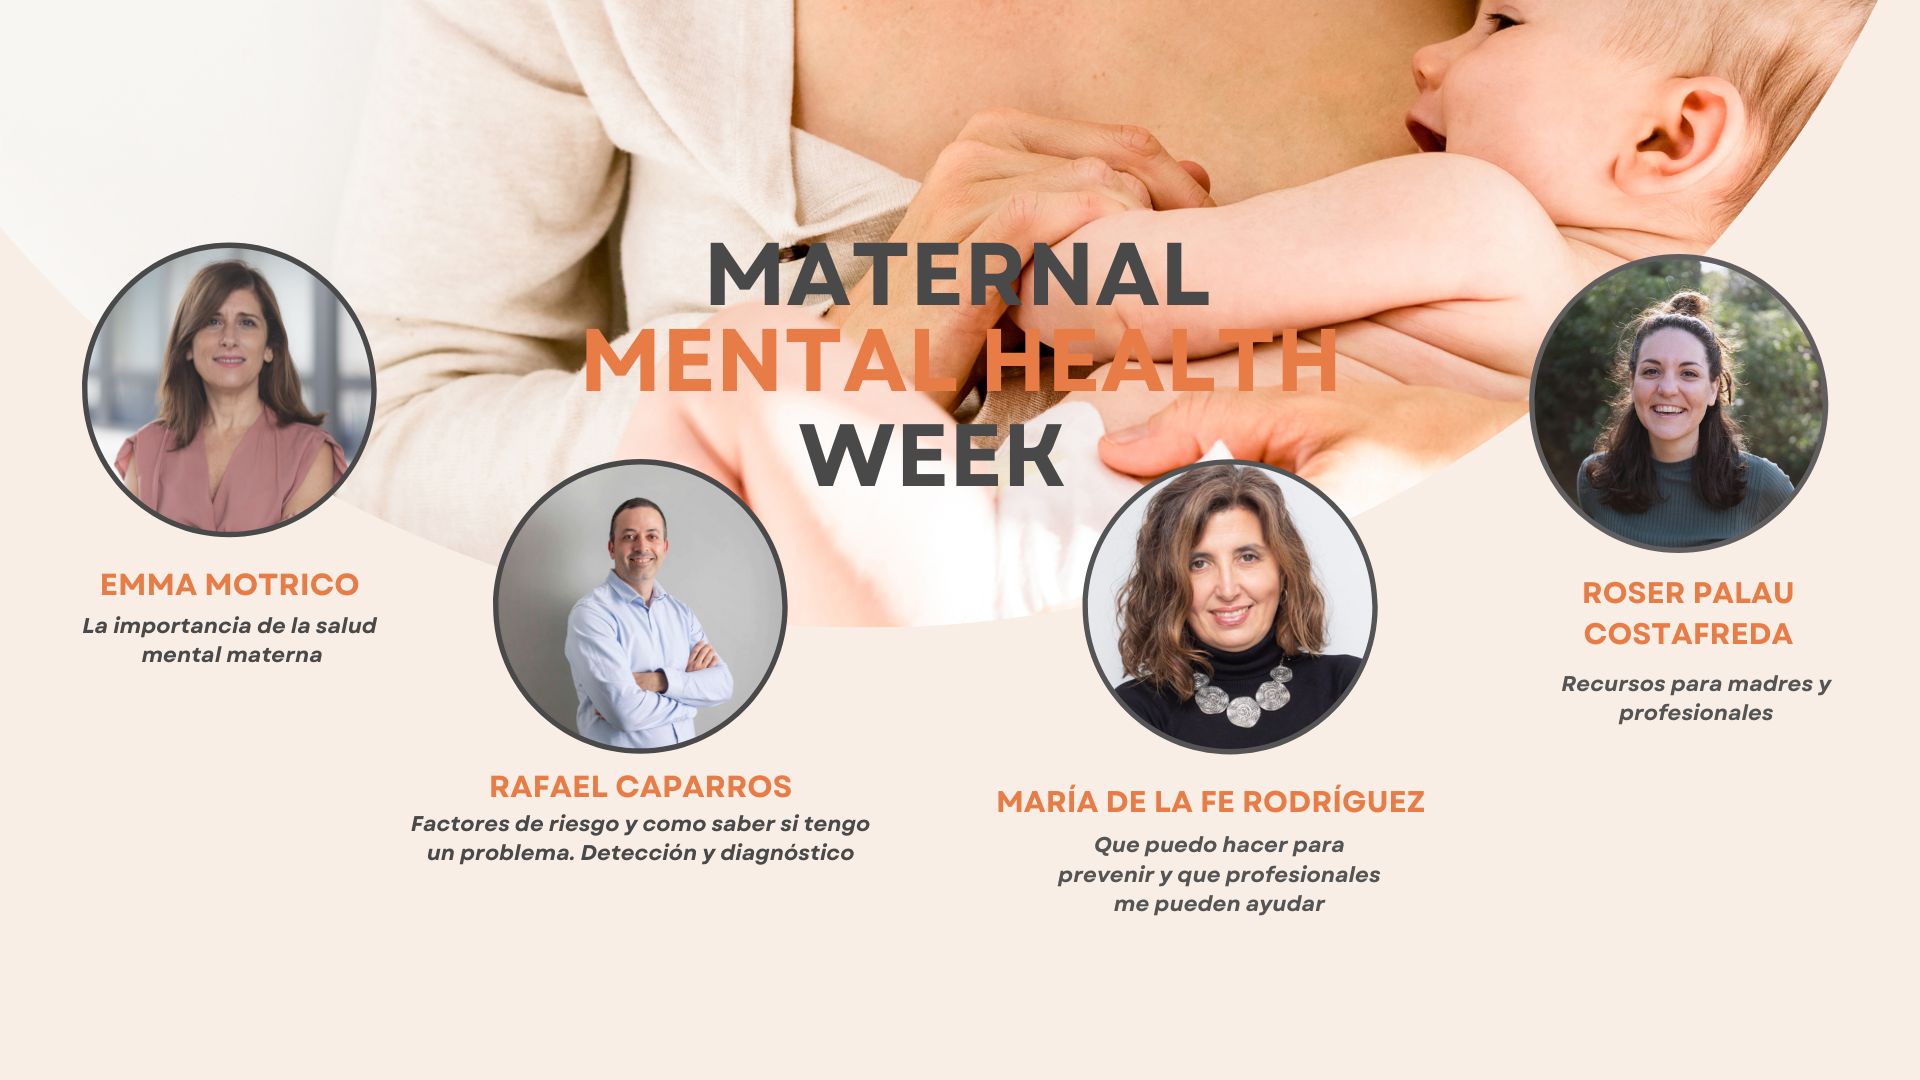 Expertos analizan las consecuencias de la depresión postparto tanto para la madre como para el bebé en la Semana de la Salud Mental Materna